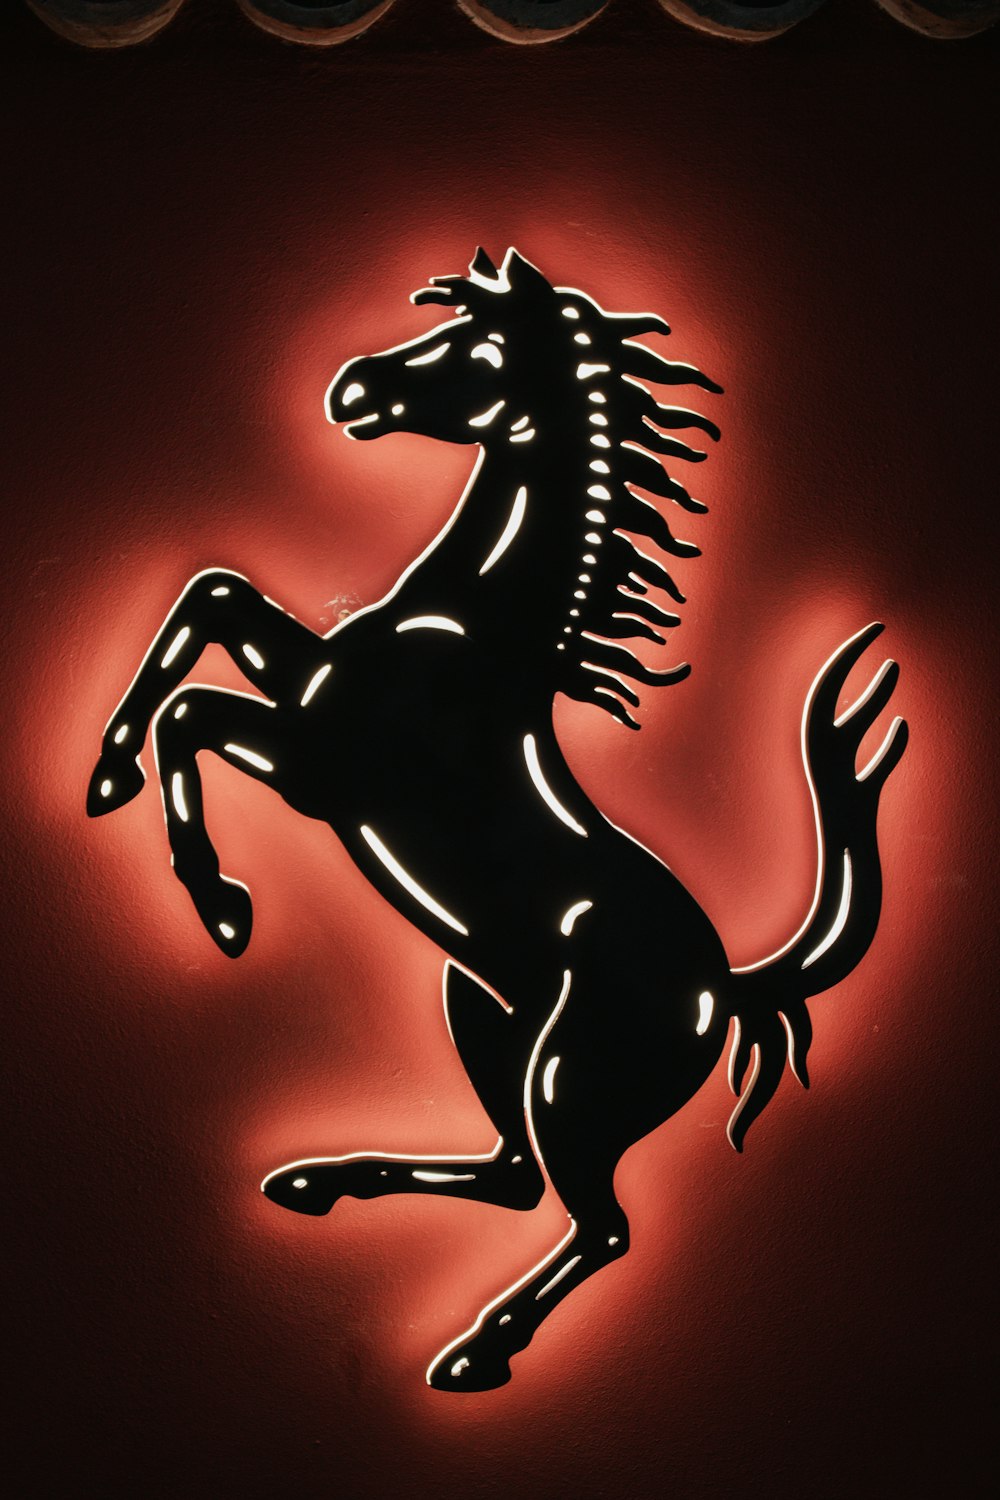 Un logo Ferrari nero e rosso su una parete rossa